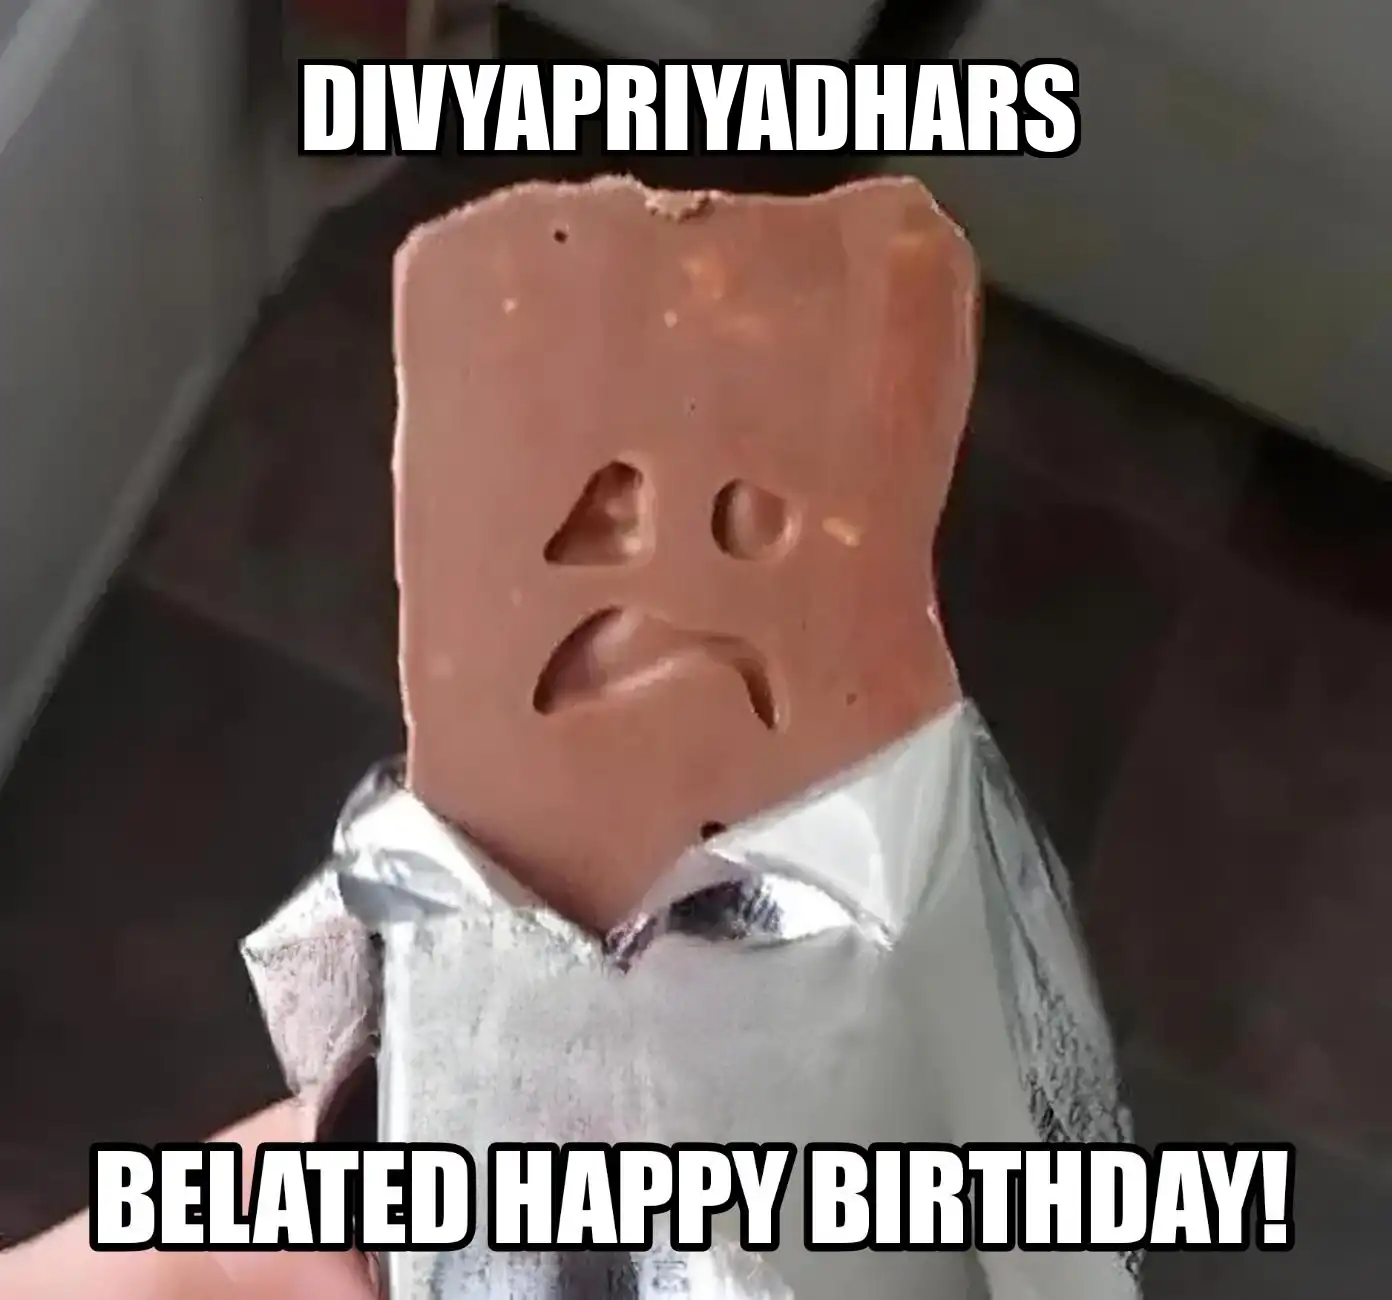 Happy Birthday Divyapriyadhars Belated Happy Birthday Meme